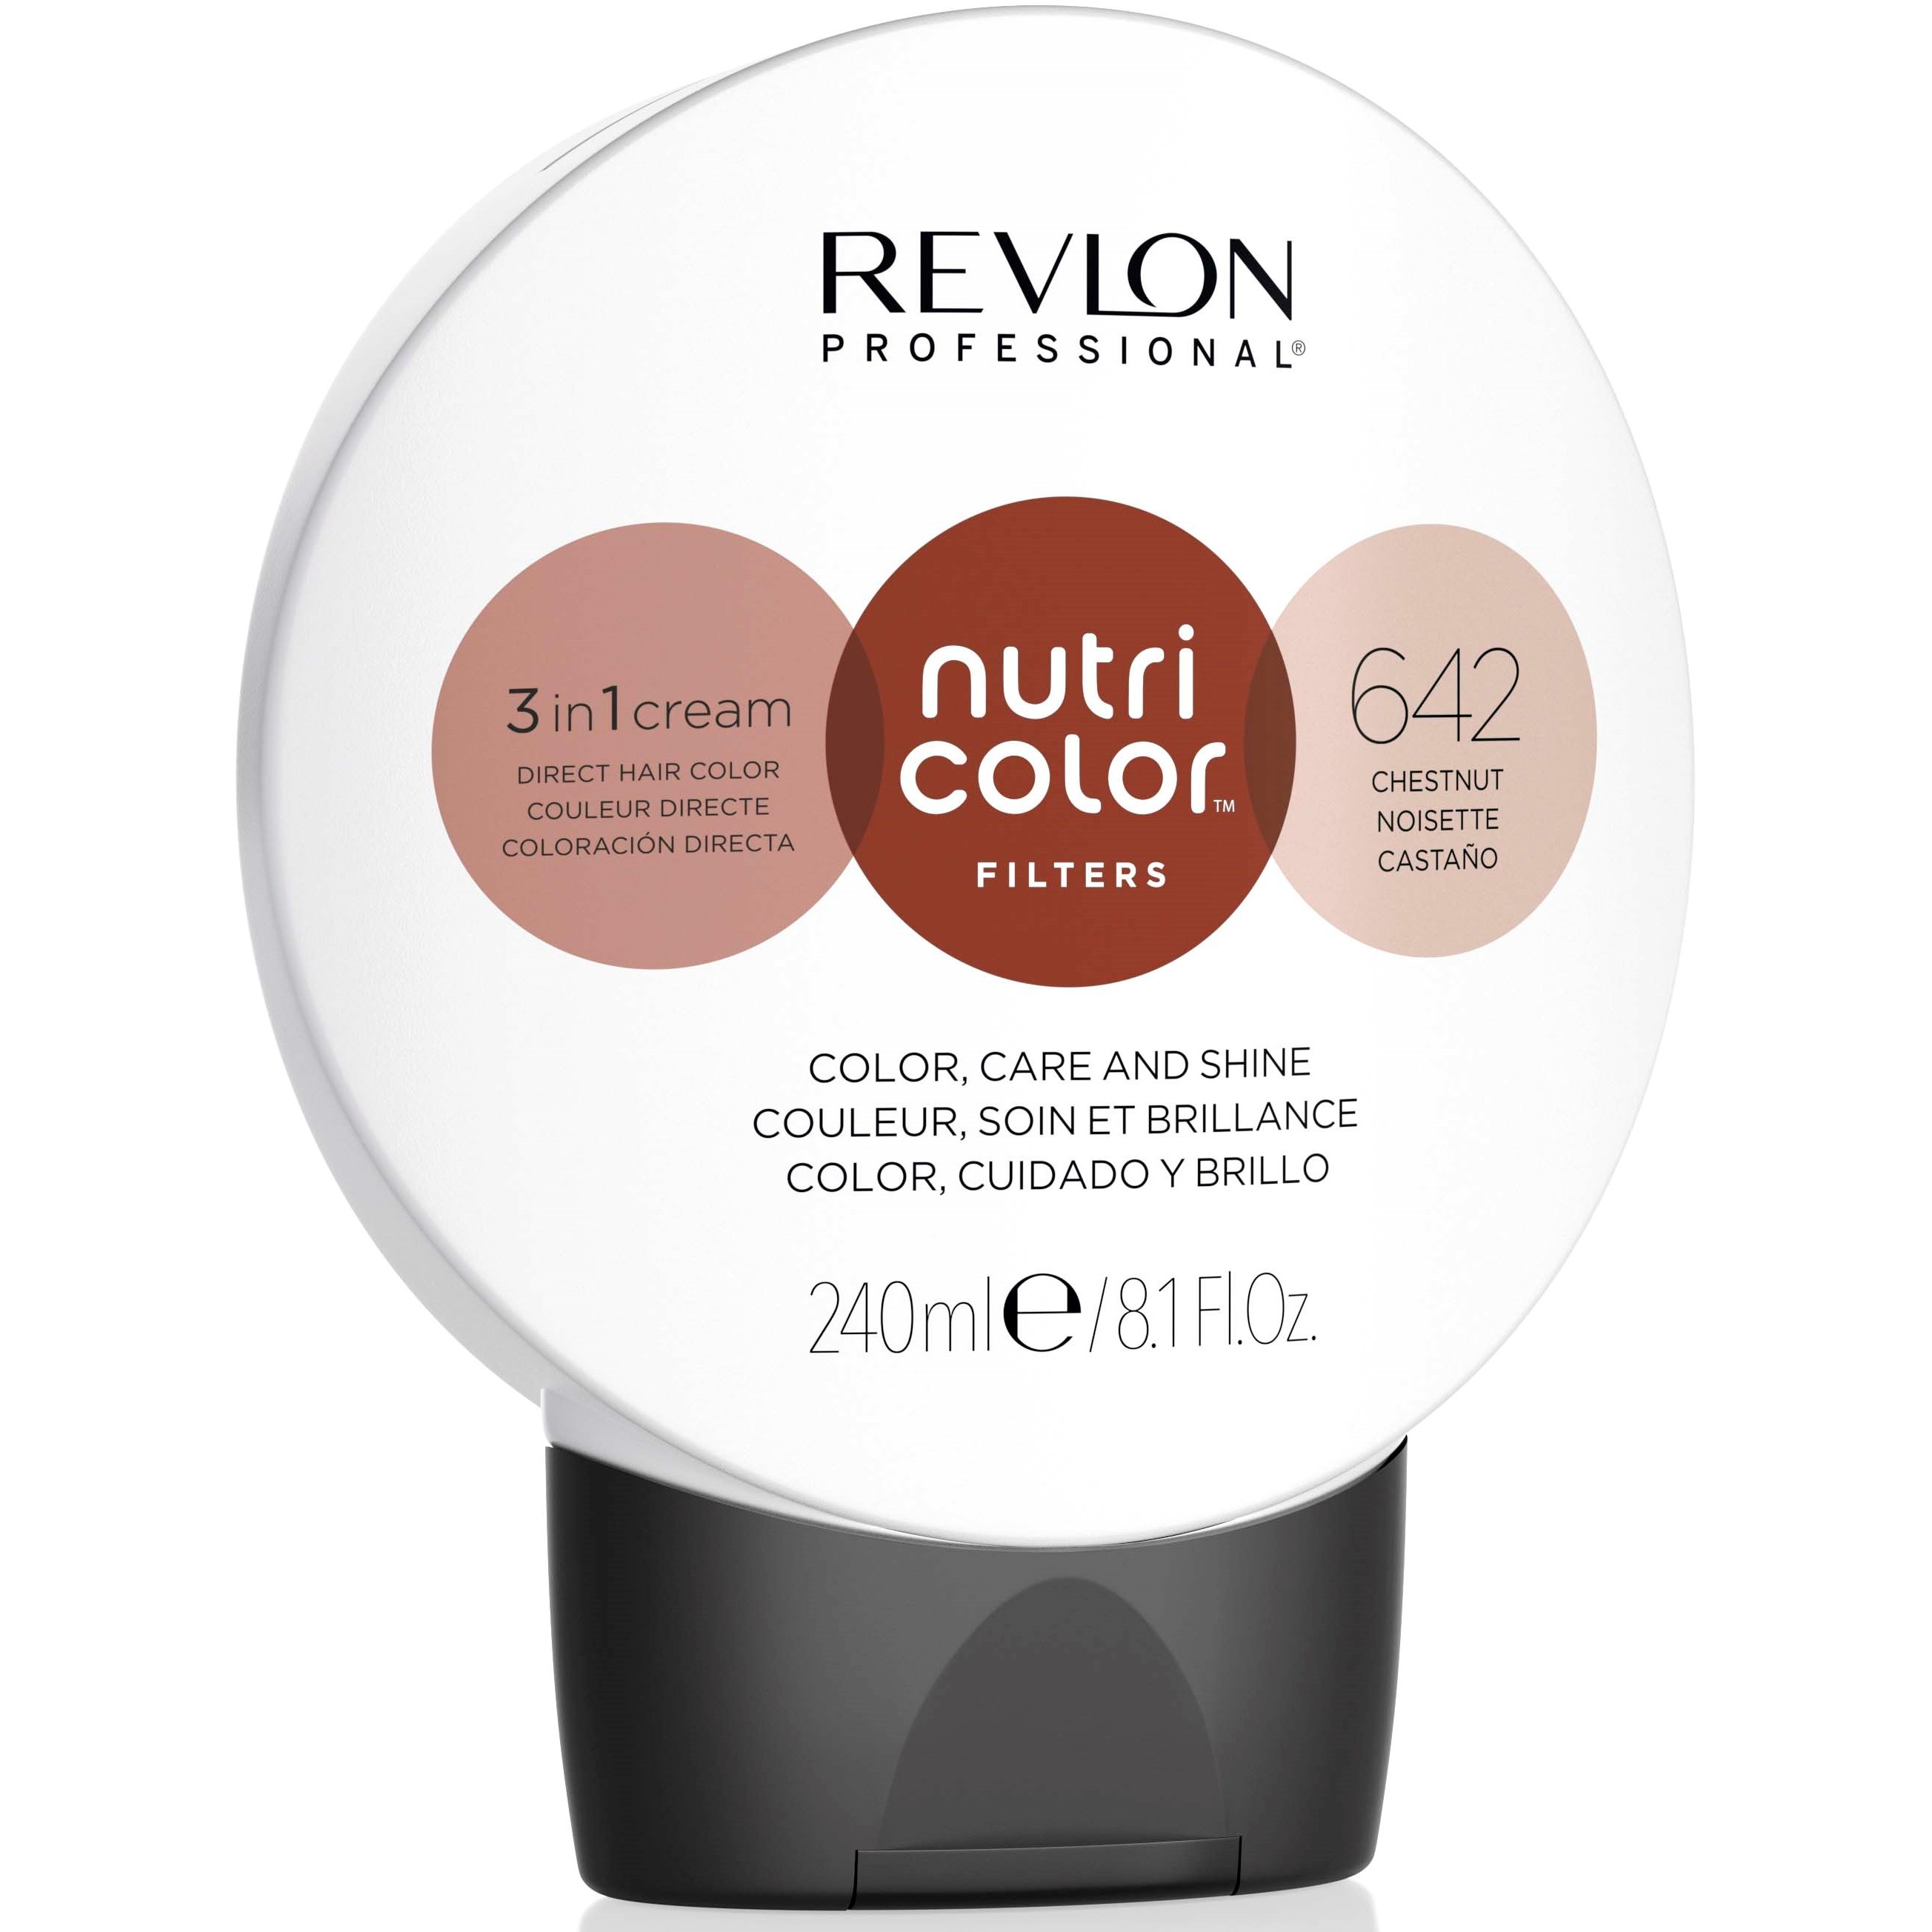 Bilde av Revlon Nutri Color Filters 3-in-1 Cream 642 Chestnut